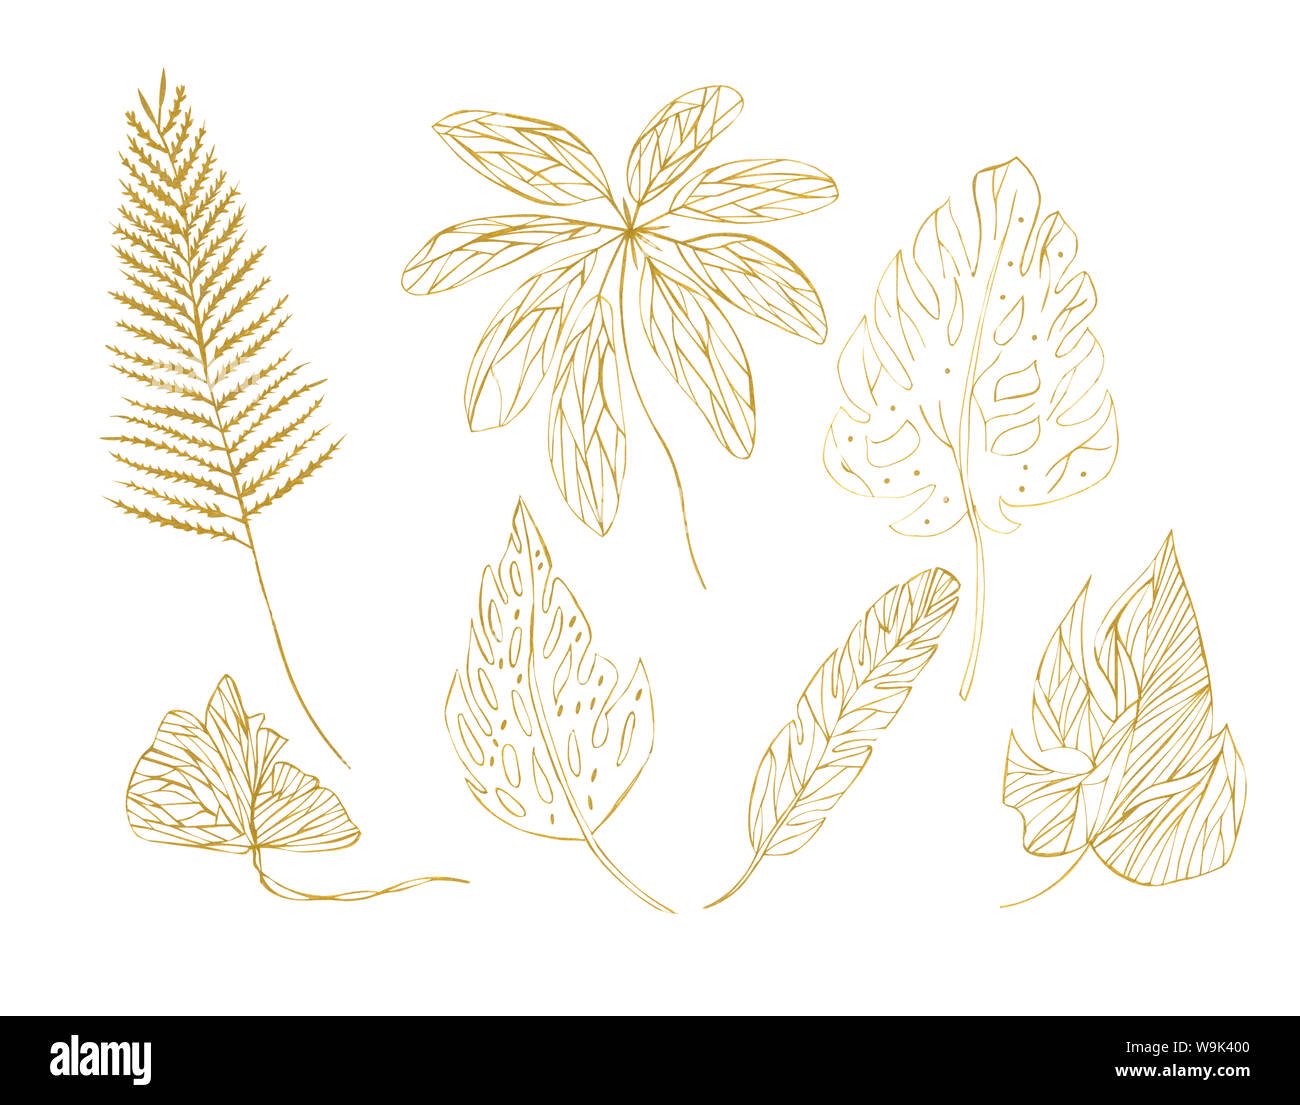 Illustration croquis dessin contour orange feuilles de plantes exotiques sur fond blanc couche isolée comme un ensemble Banque D'Images